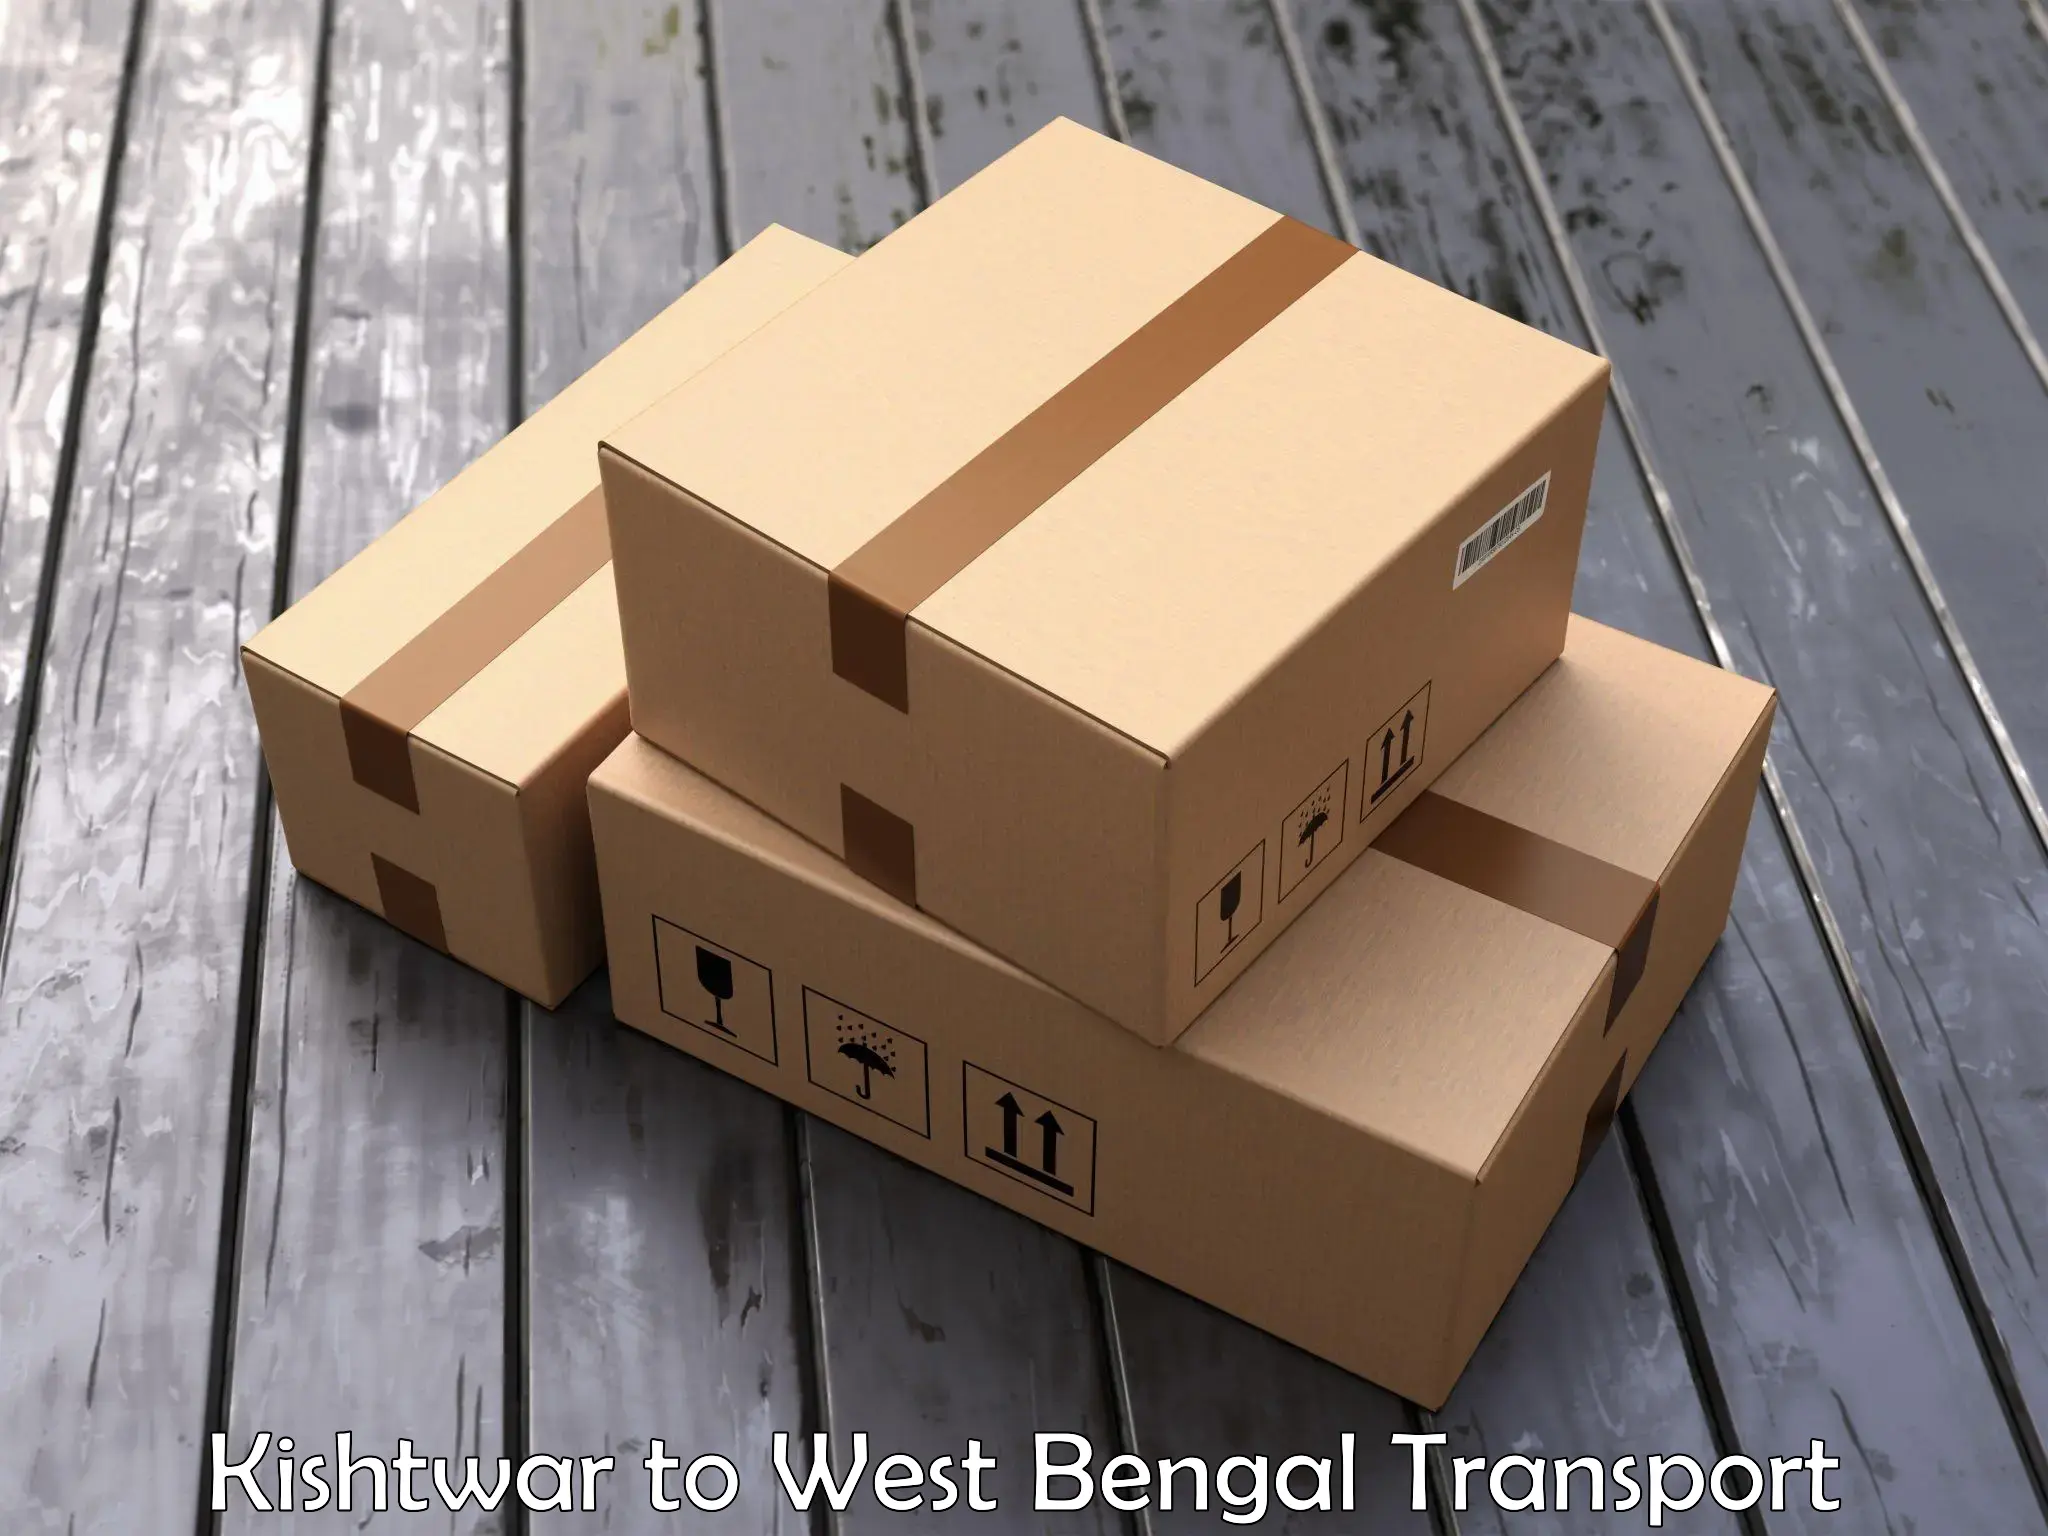 Commercial transport service Kishtwar to Kakdwip